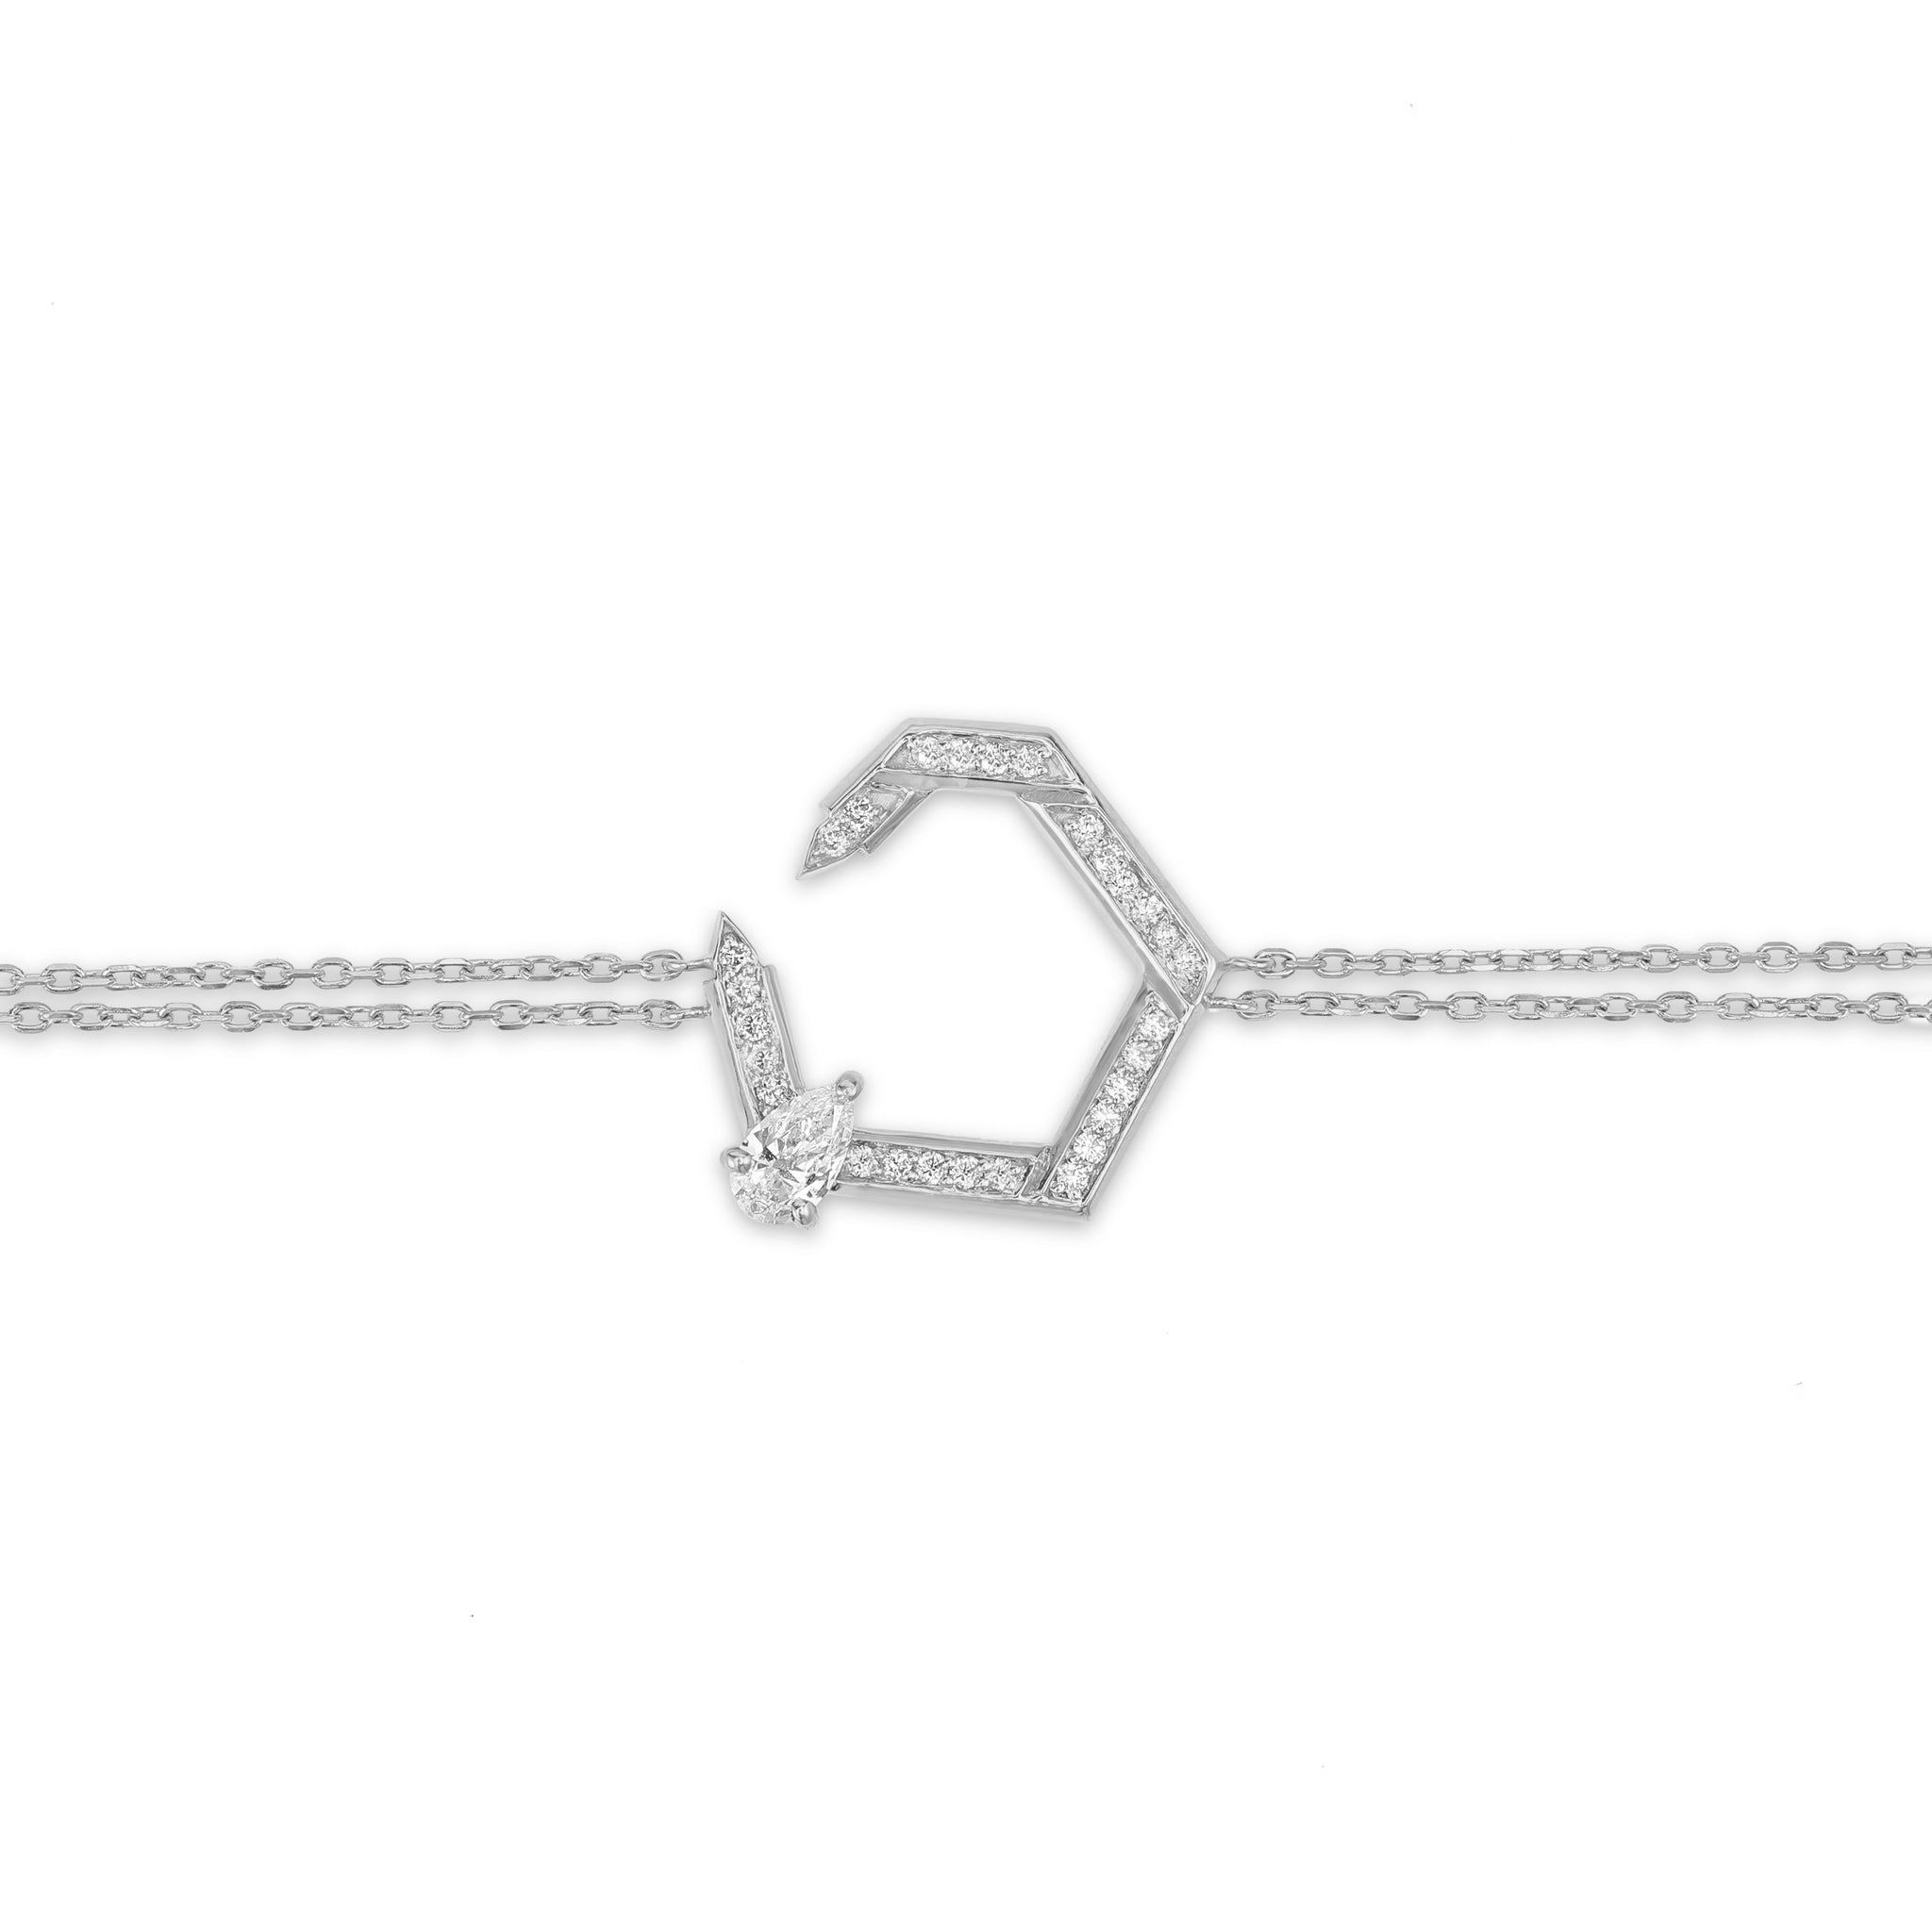 Hexad Diamond Bracelet in White Gold